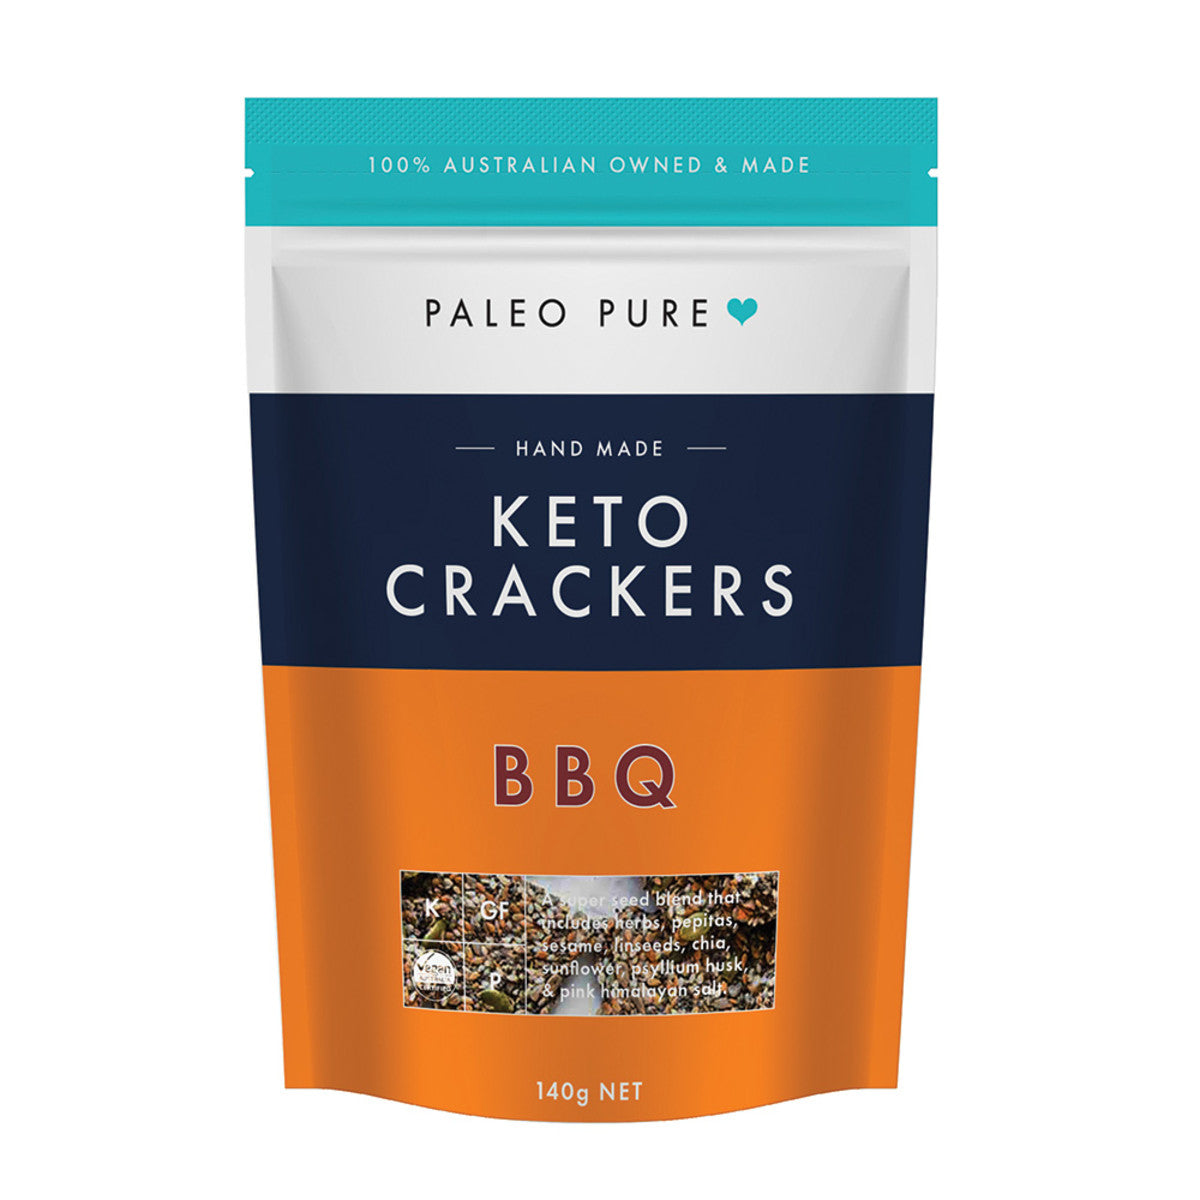 Paleo Pure Keto Crackers BBQ 140g